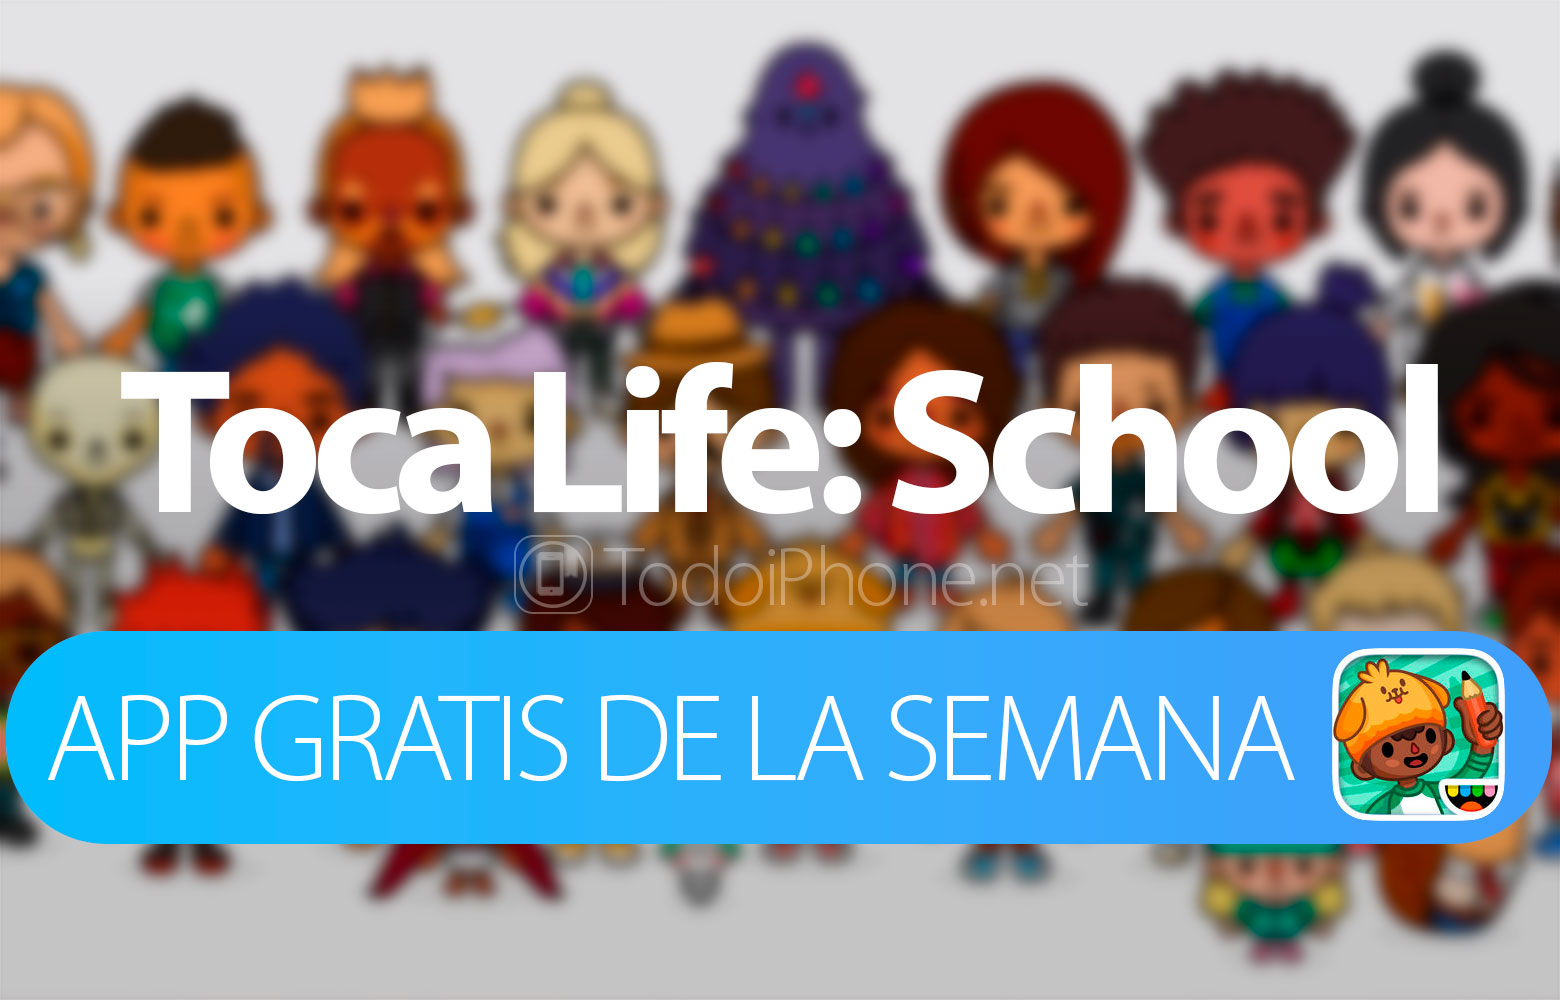 Toca Life: School é o aplicativo grátis da semana para iOS na App